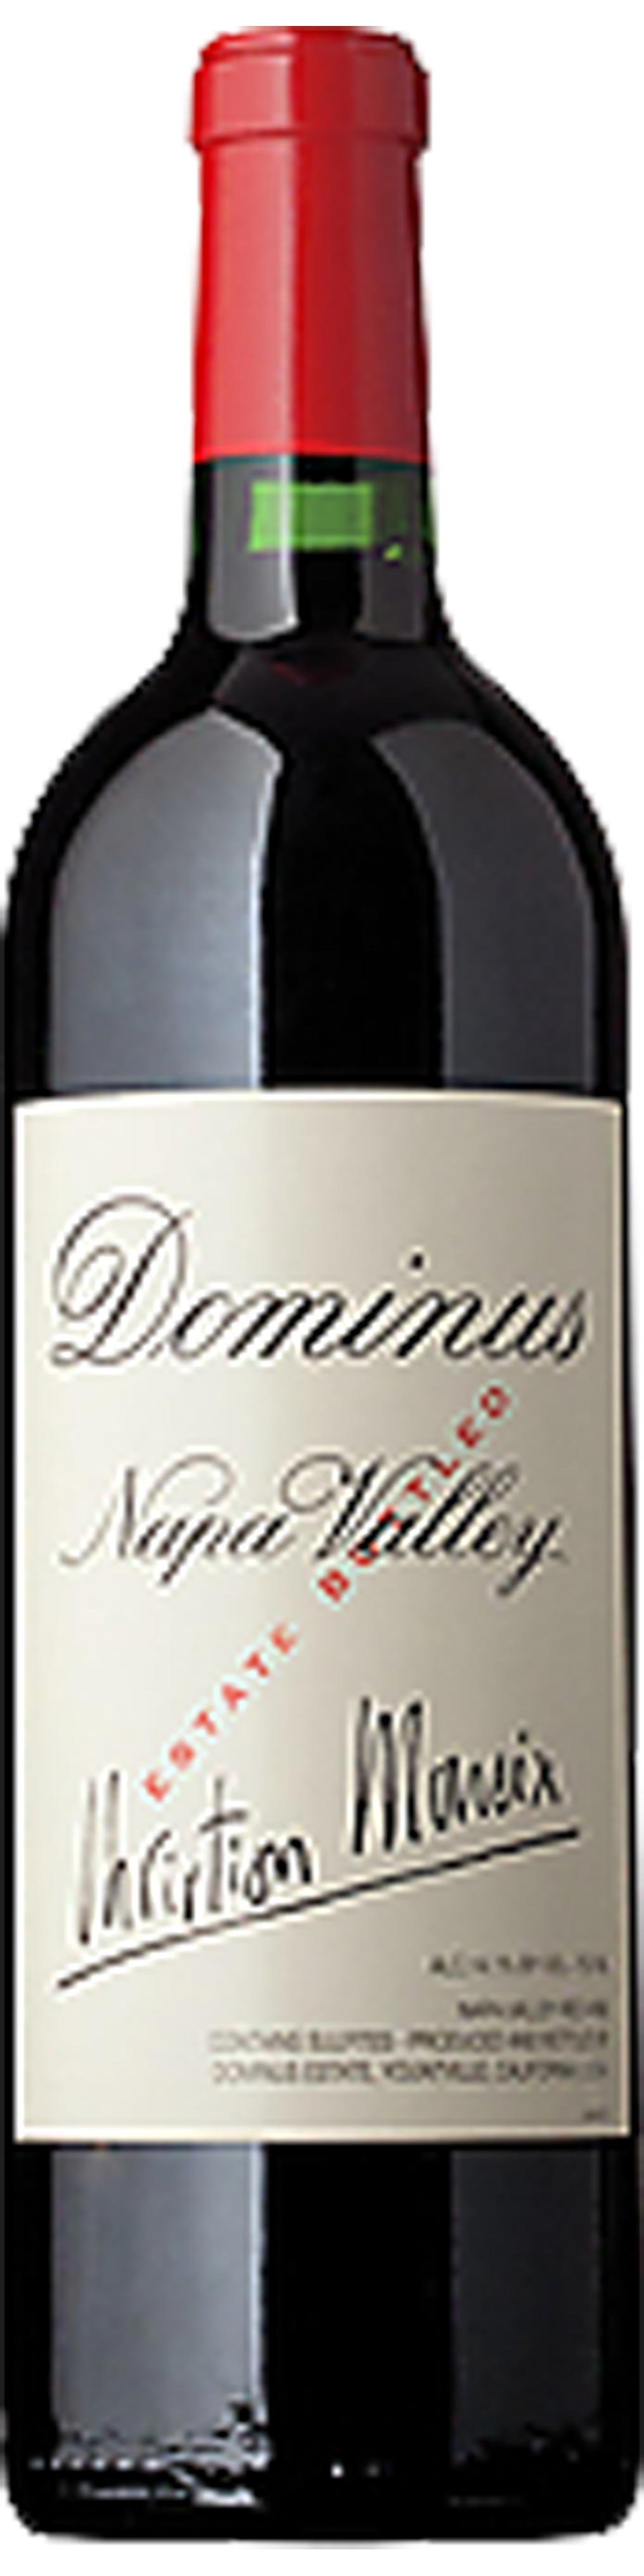 Bottle shot of 2001 Dominus